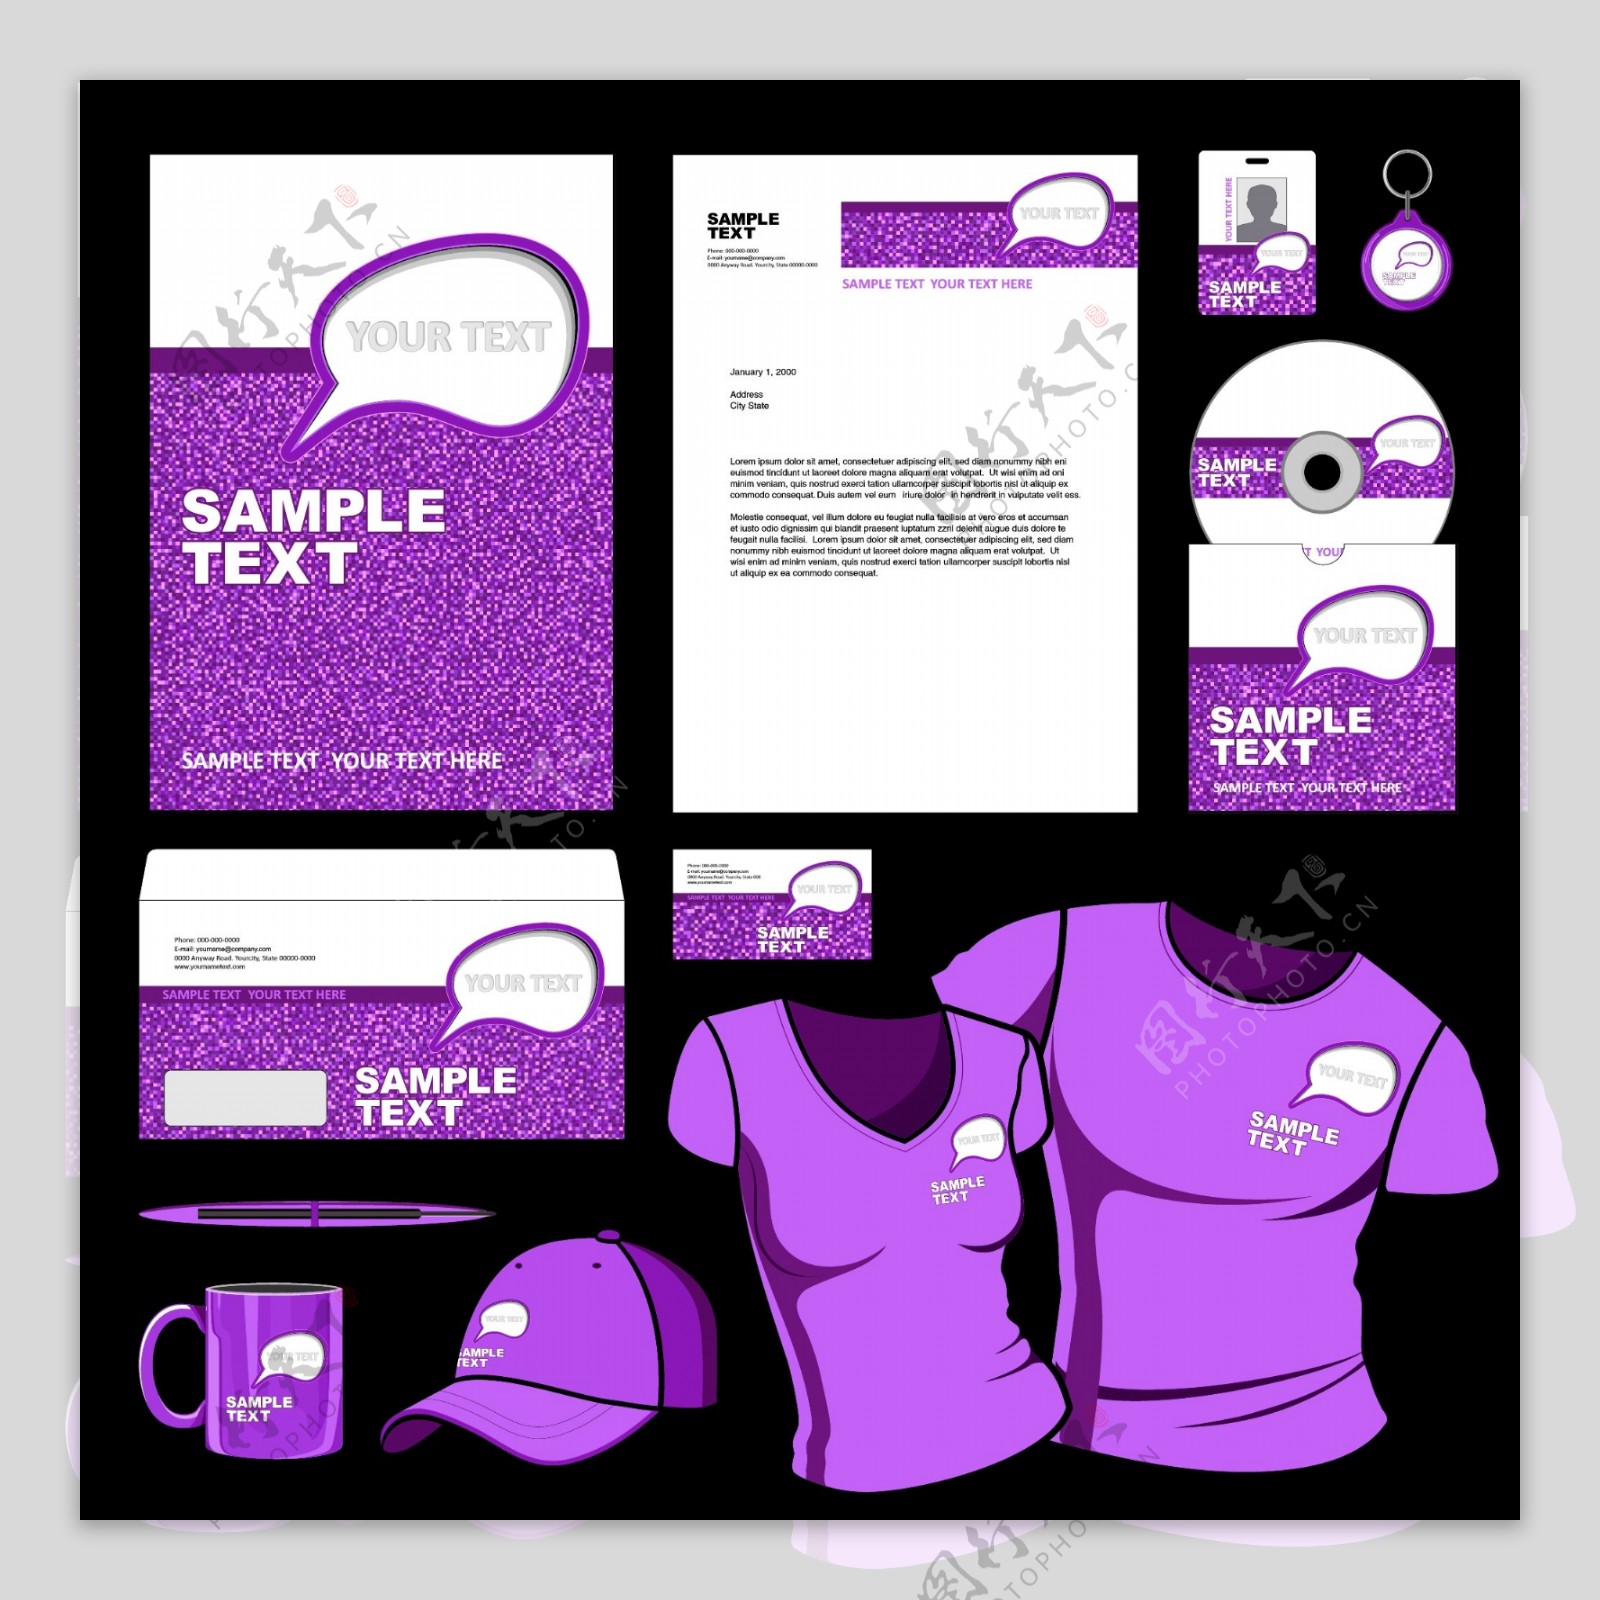 紫色企业标识应用矢量素材